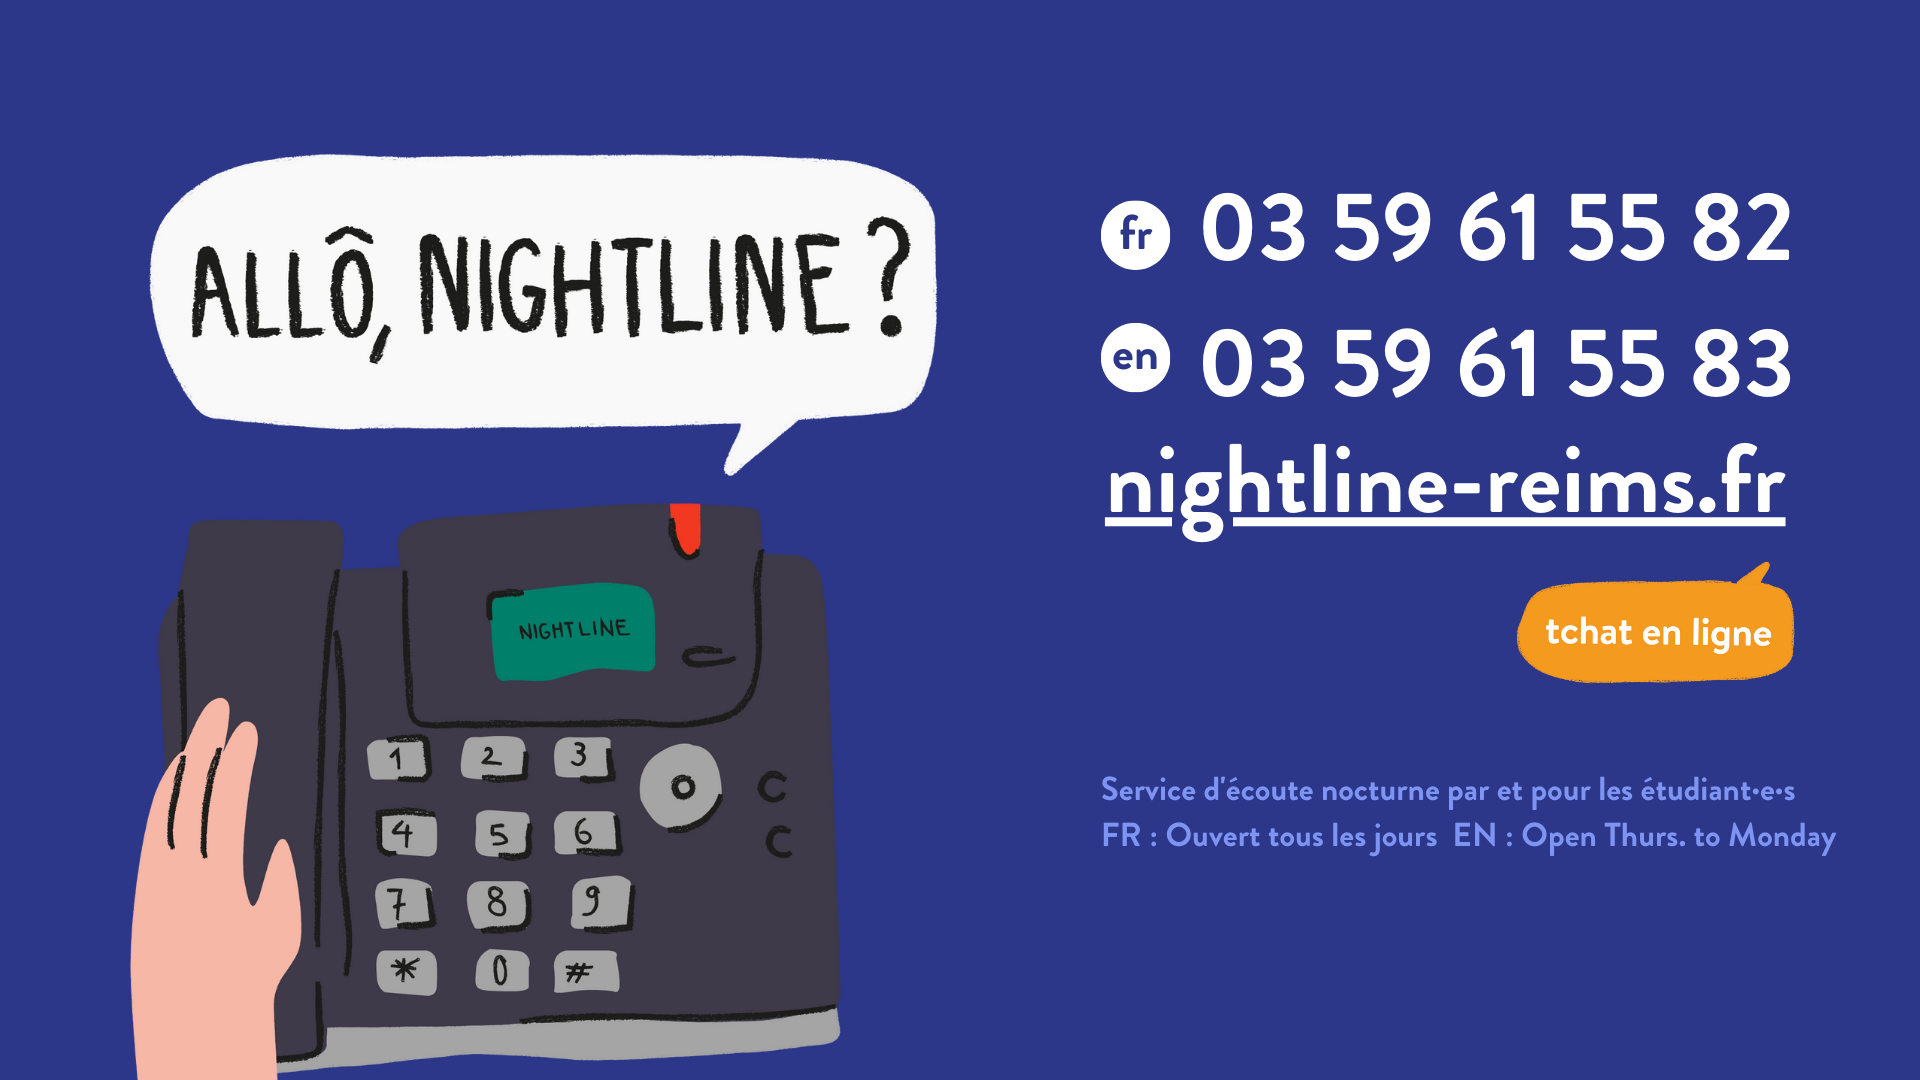 Nightline Reims, l’association qui t’accompagne pendant ta vie étudiante. Service d'écoute nocturne par et pour les étudiants. 03 59 61 55 82